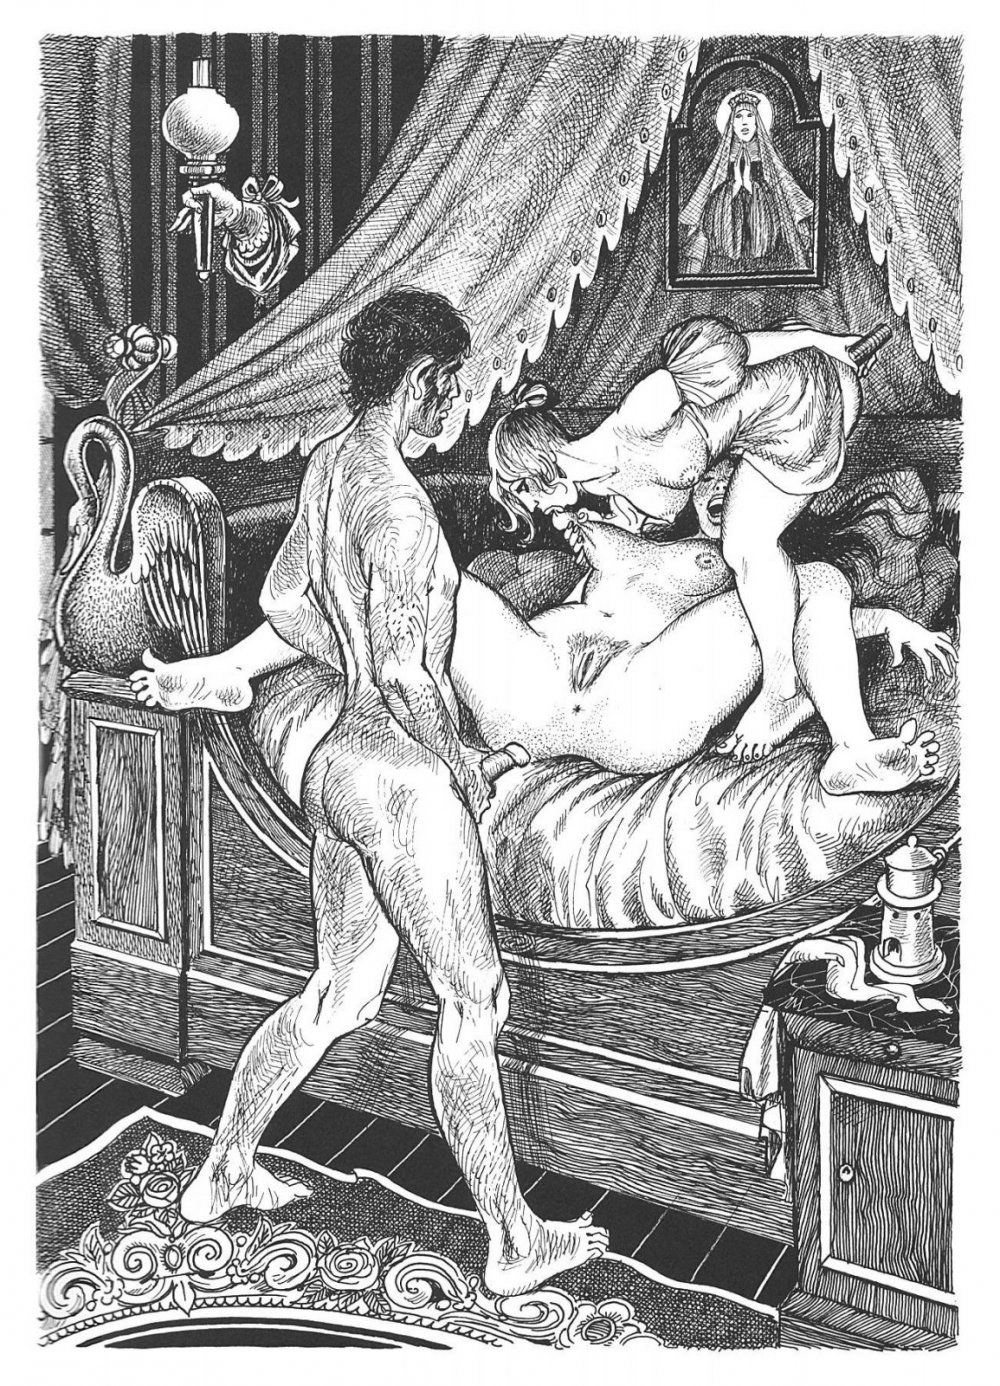 Порно средневековье (65 фото) - порно и фото голых на grantafl.ru